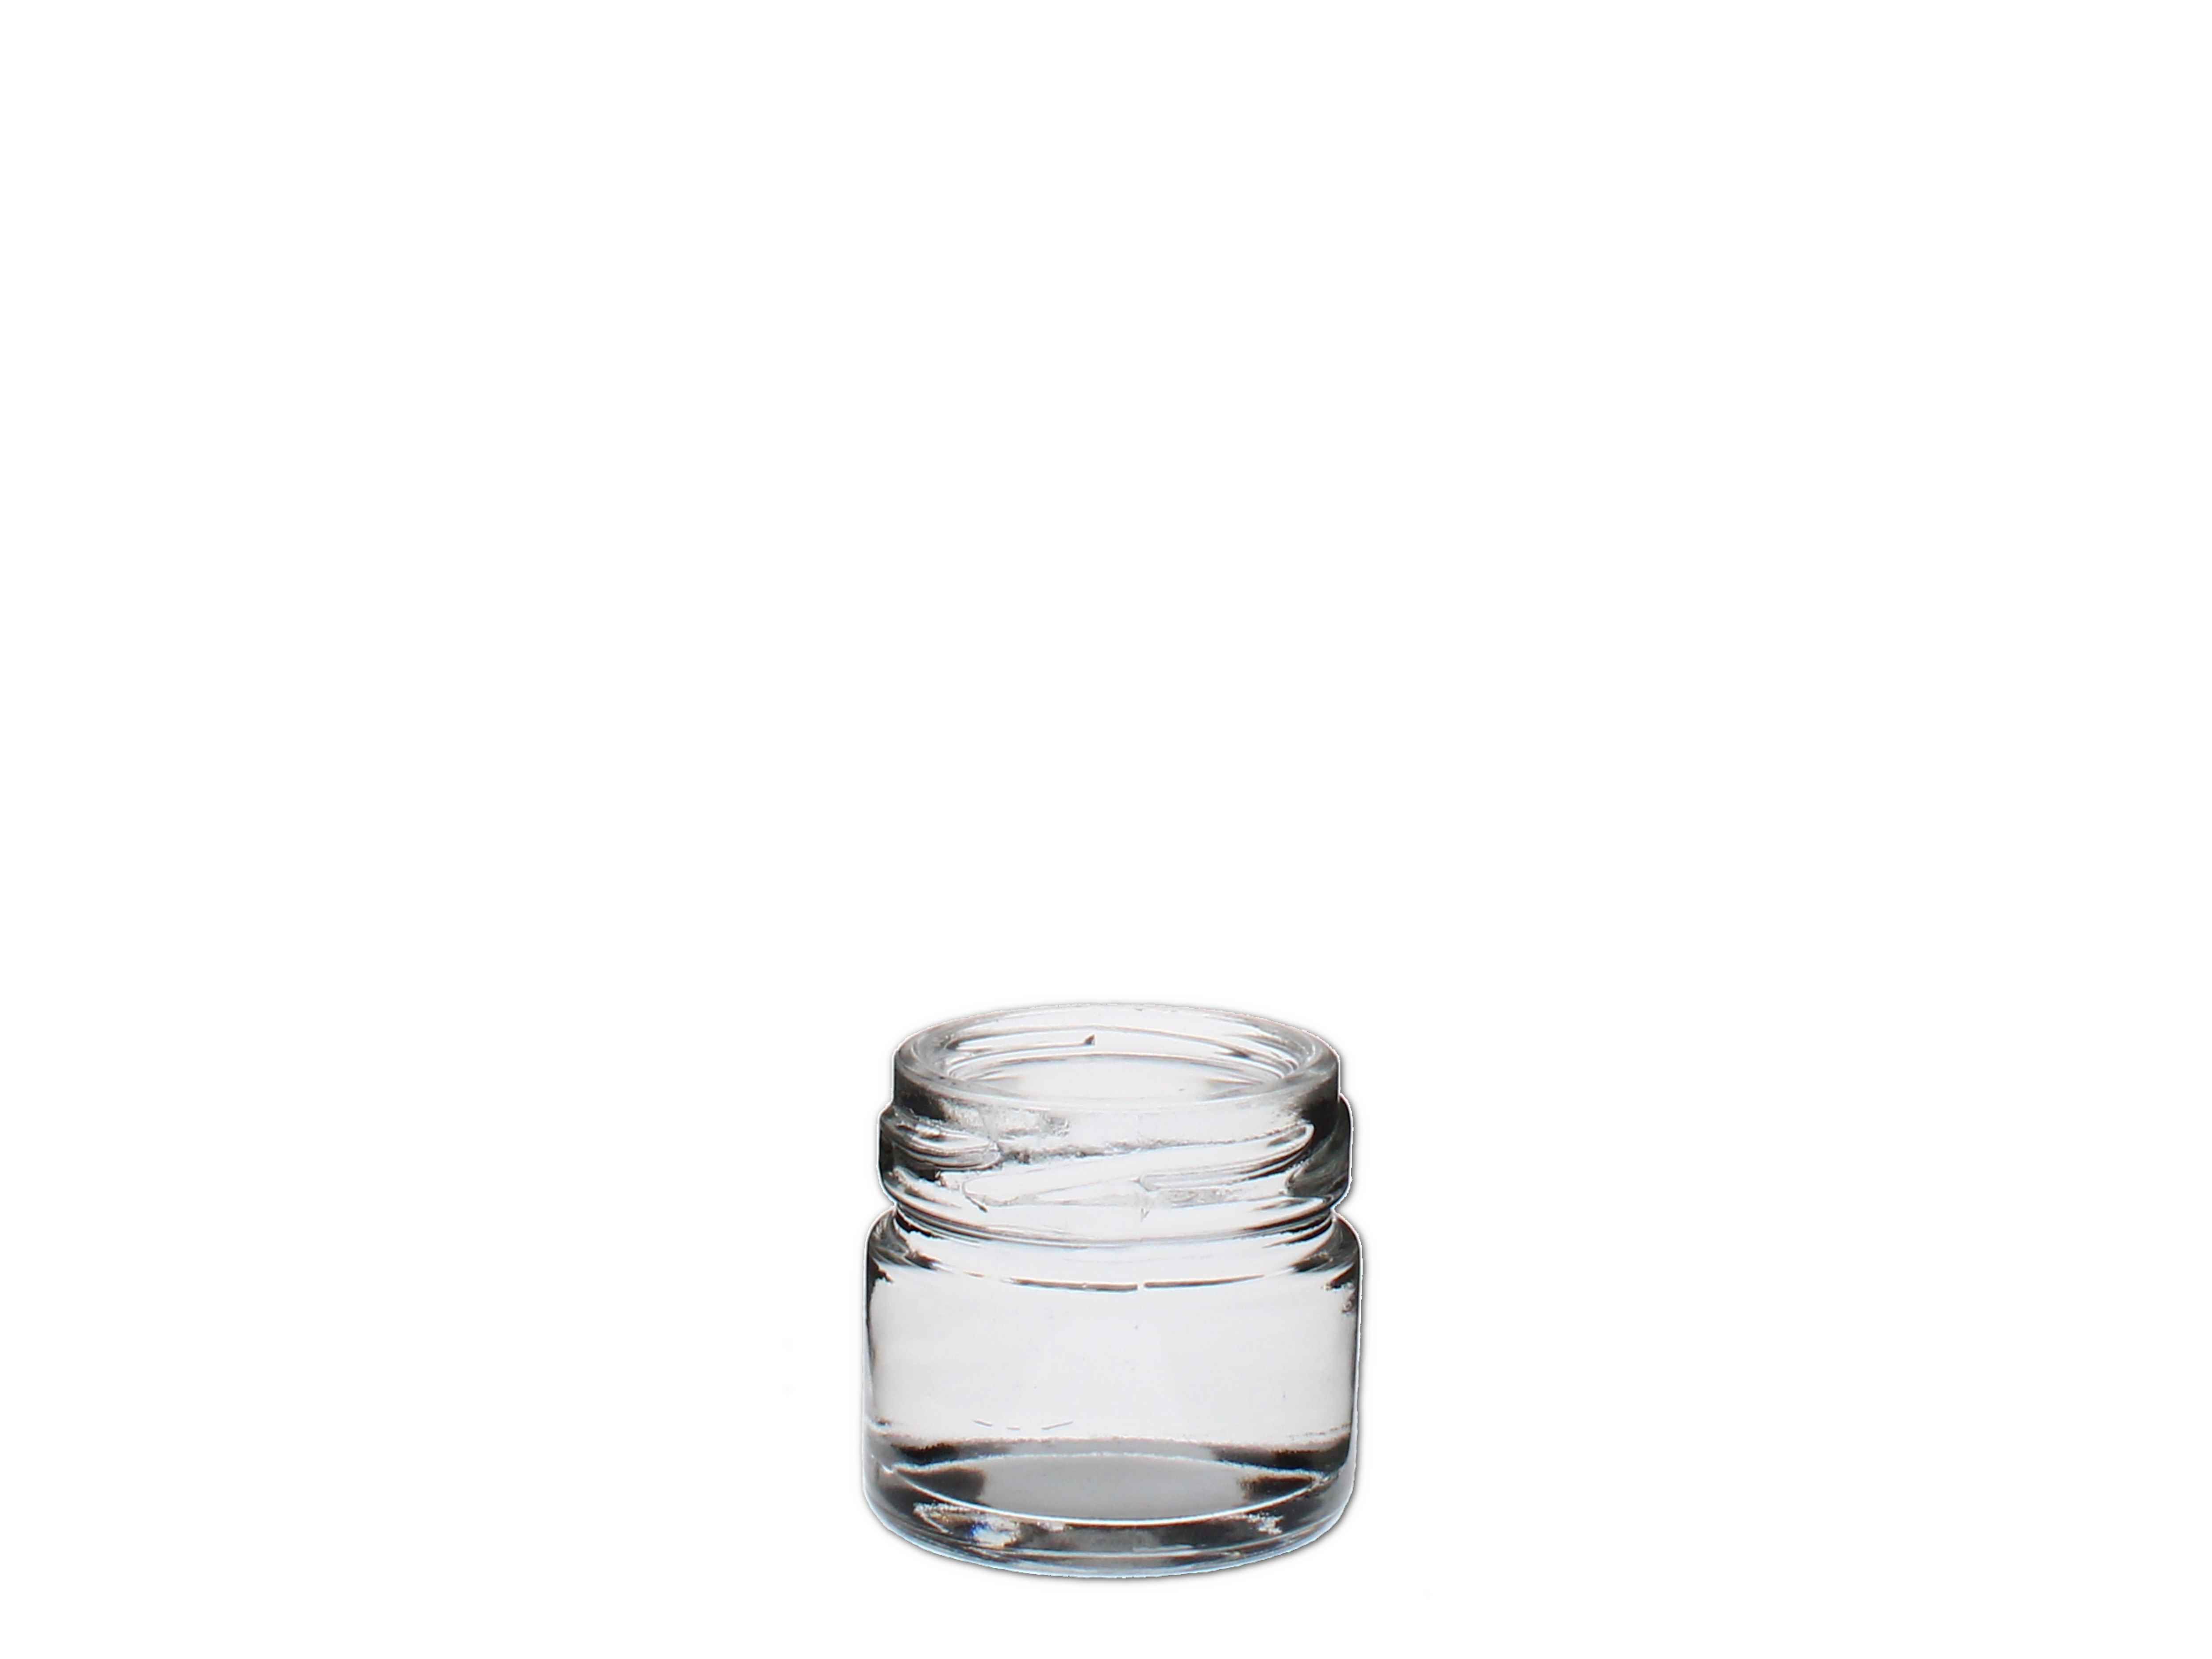    Schraubglas rund 30ml, weiss (TO43) - Abverkaufspreis